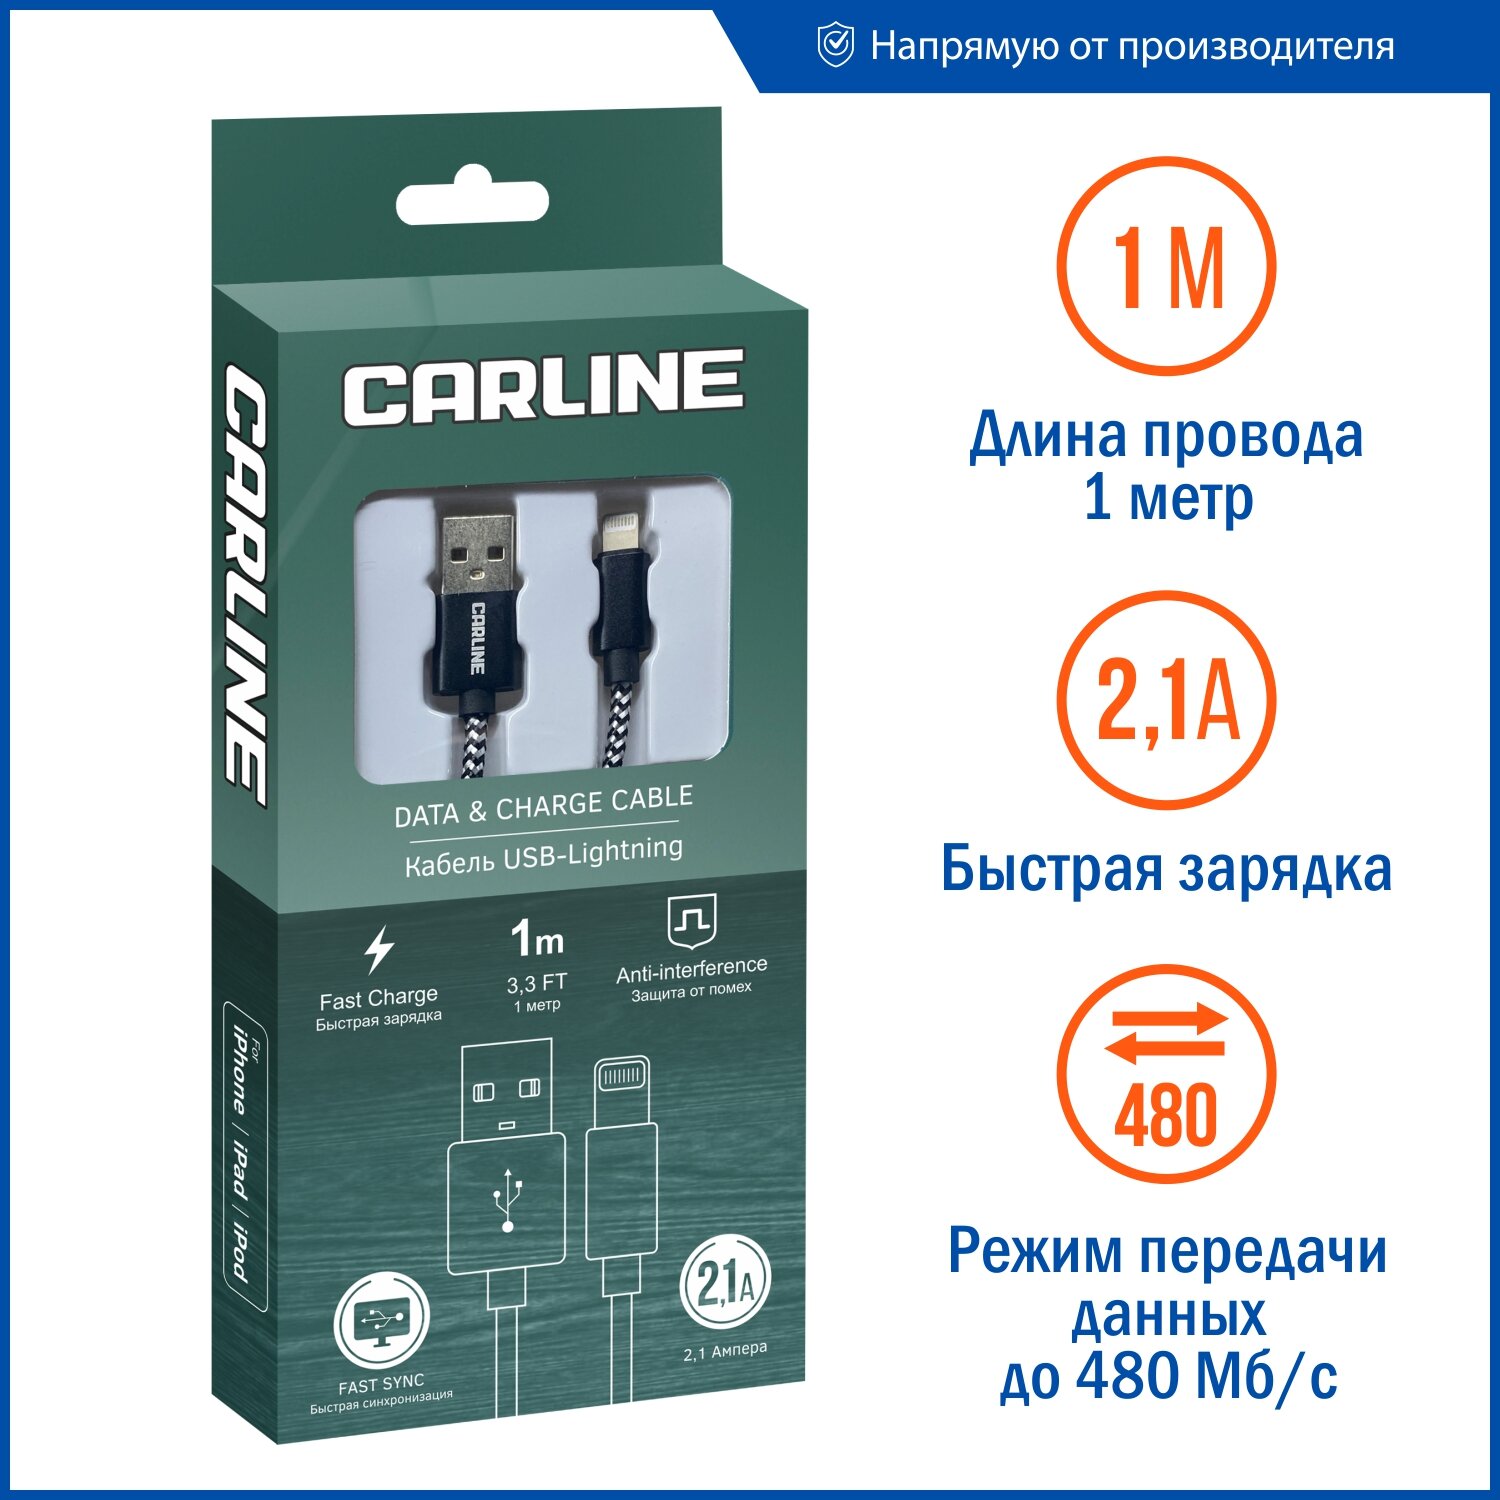 Кабель для зарядки телефонов/смартфонов/планшетов CARLINE USB-Lightning для iPhone iPad iPod